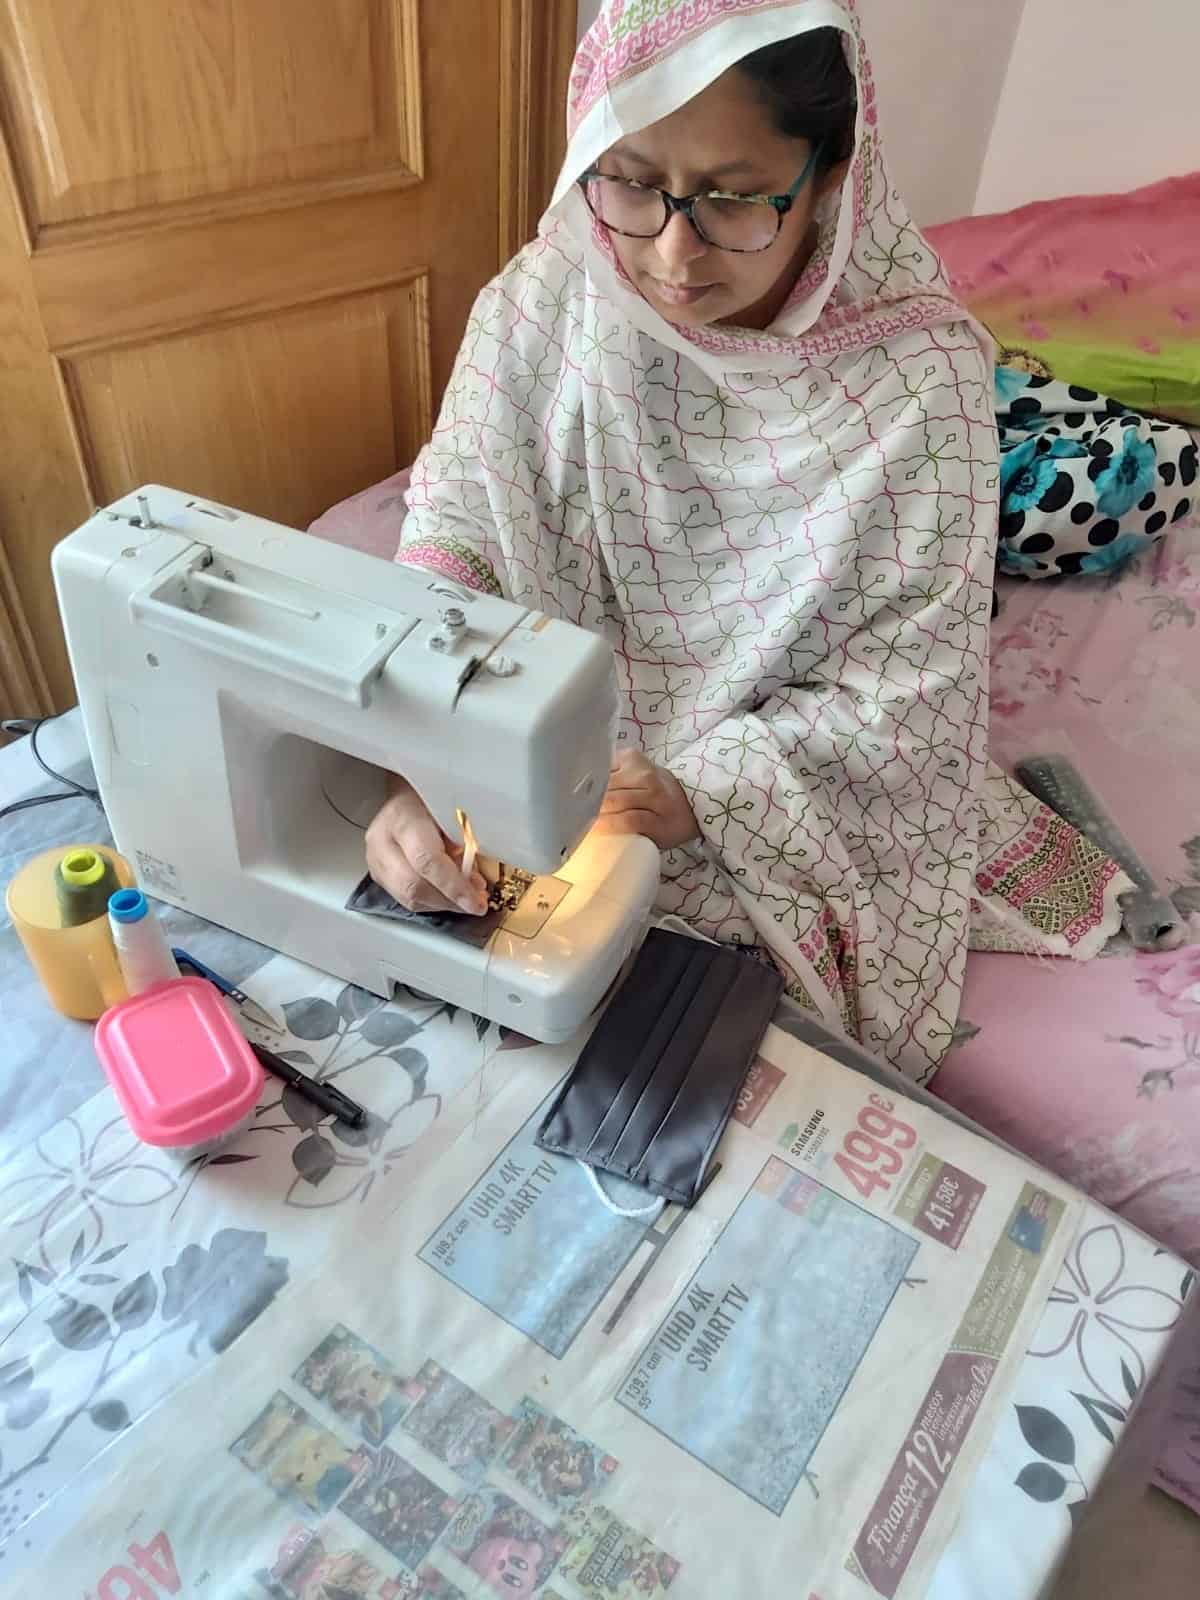 Participant del Casal dels Infants amb una màquina de cosir 